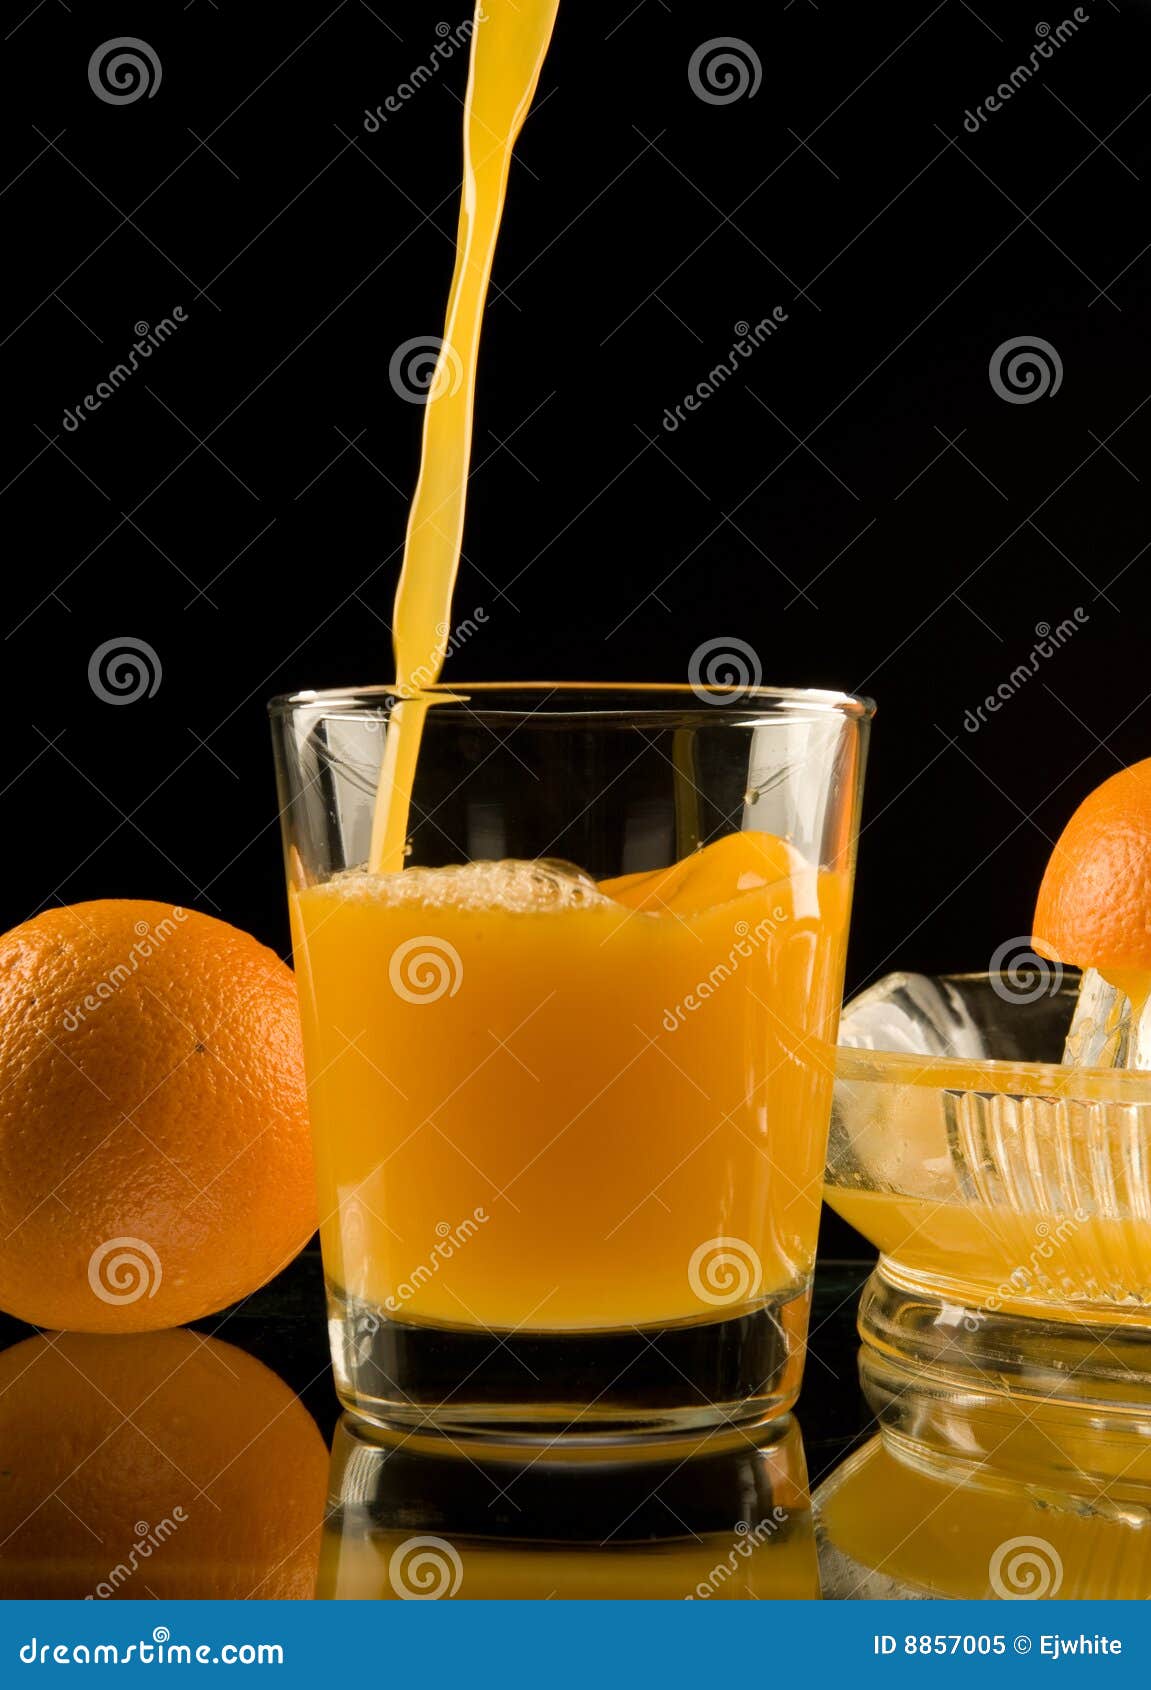 Fresh Squeezed Orange Juice Stock Image - Image of tempting, healthful ...